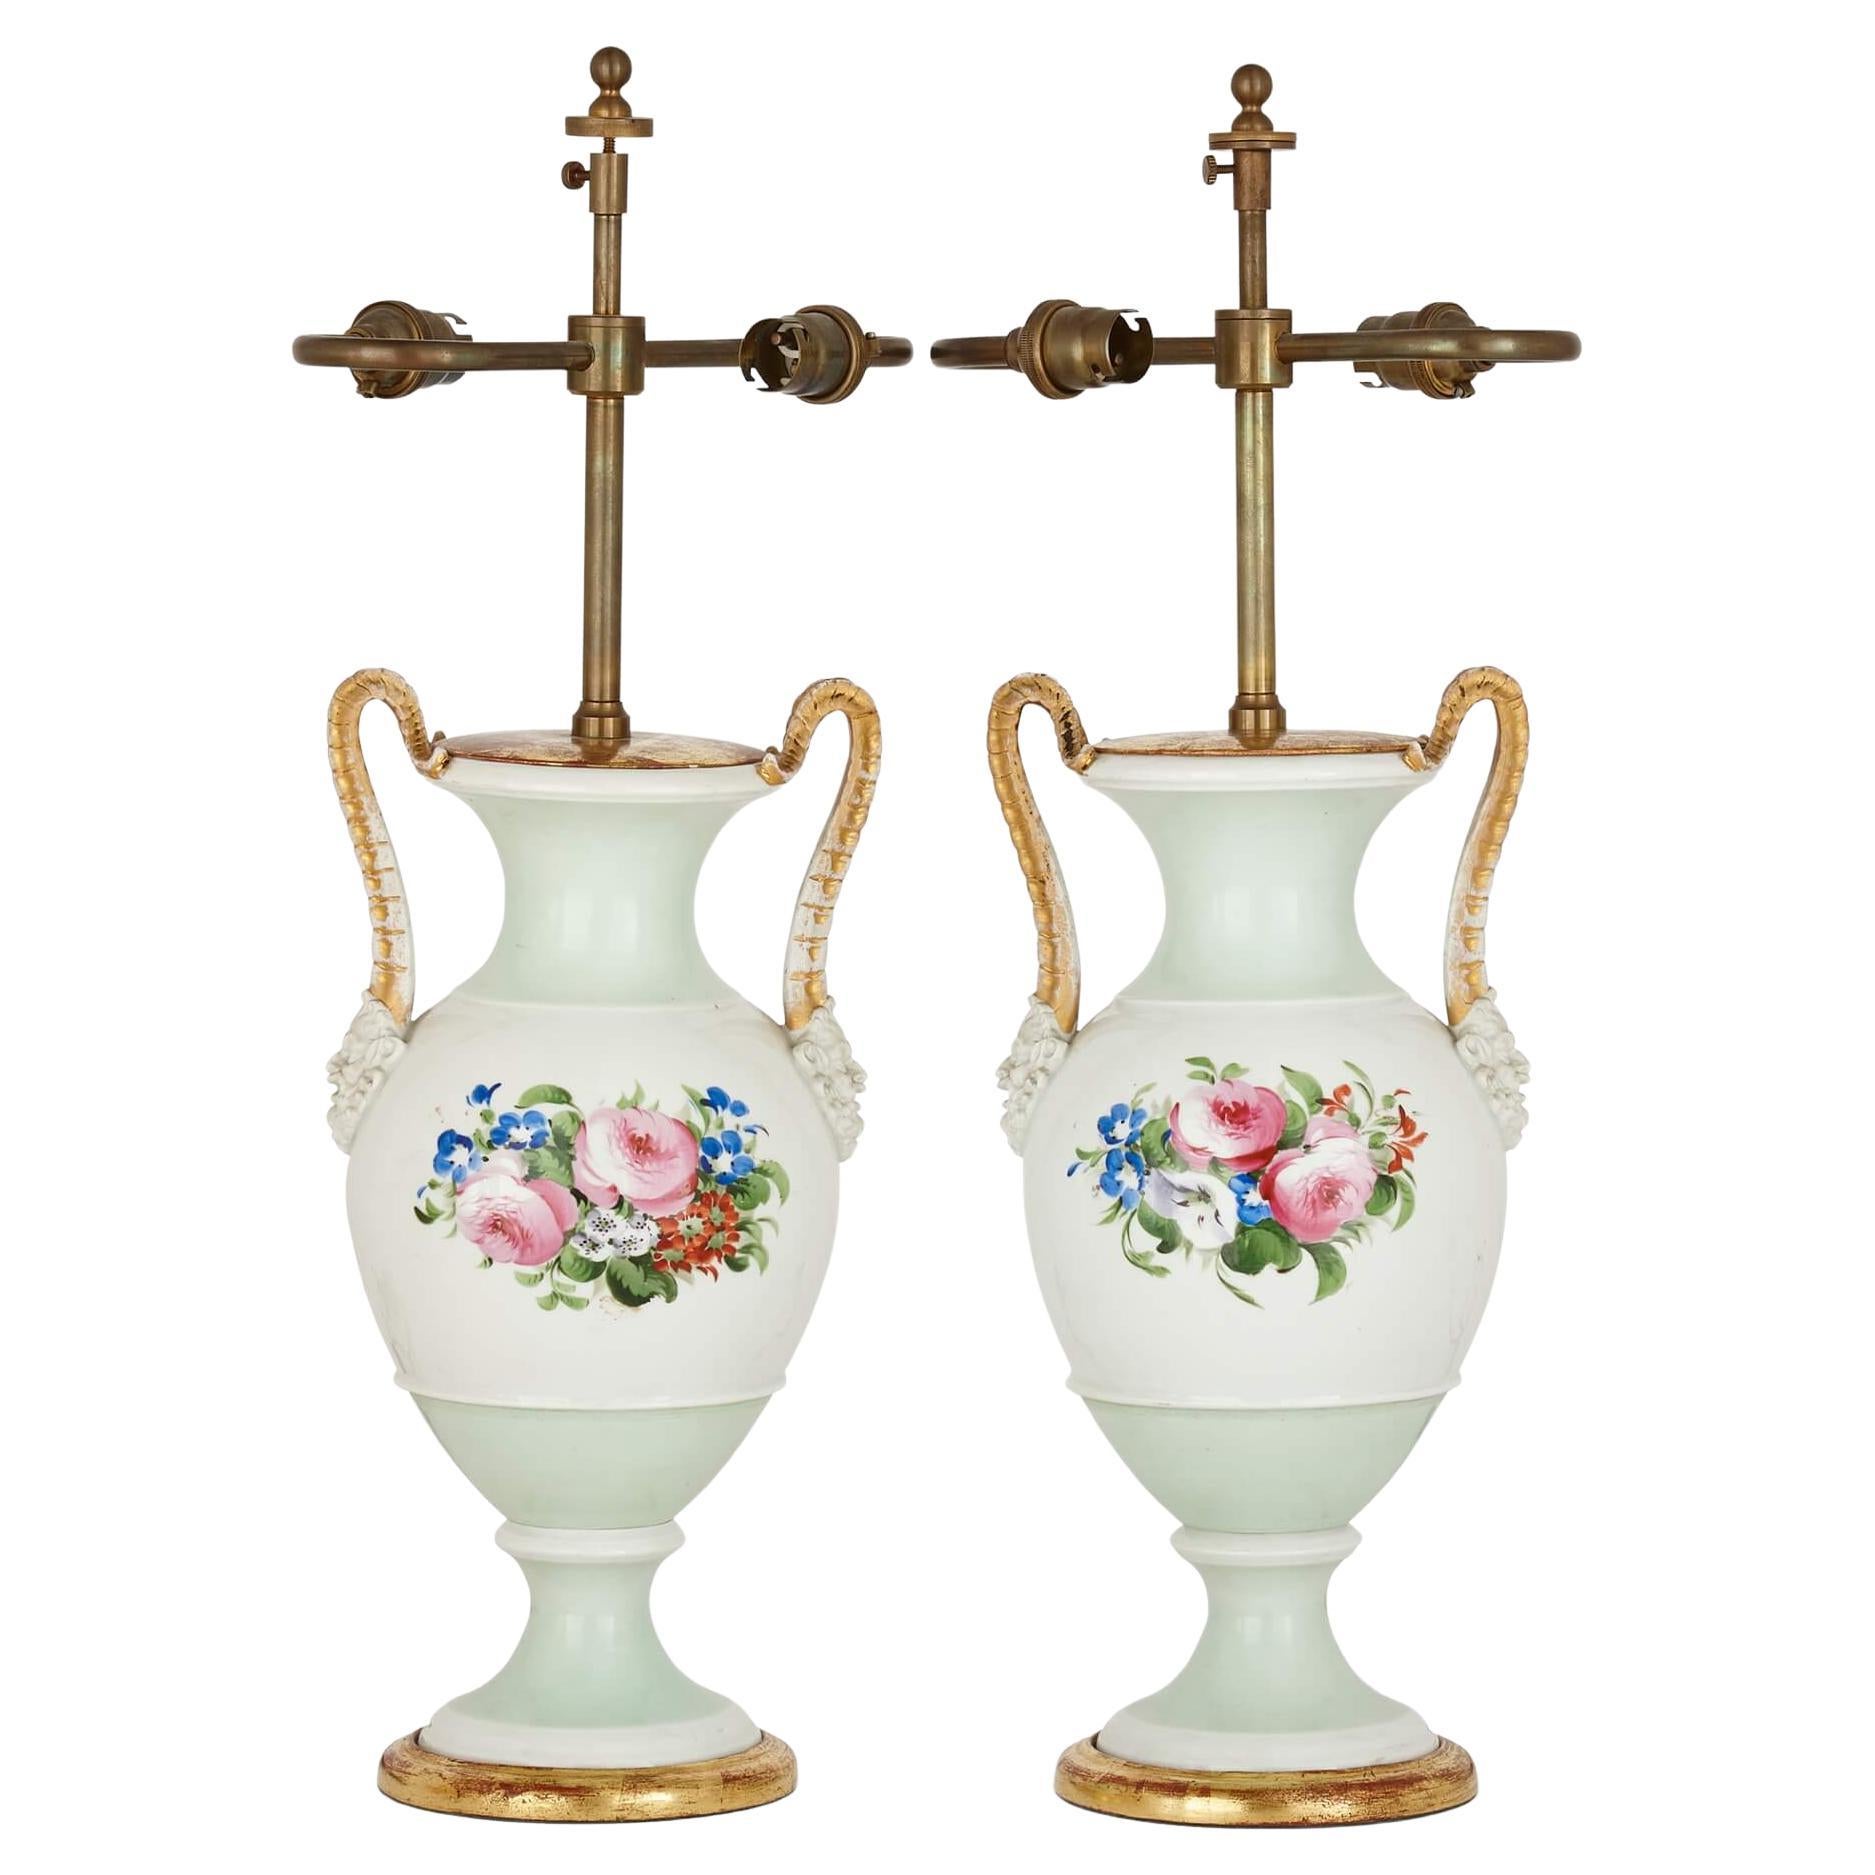 Pareja de lámparas antiguas de porcelana en forma de jarrón con decoración floral